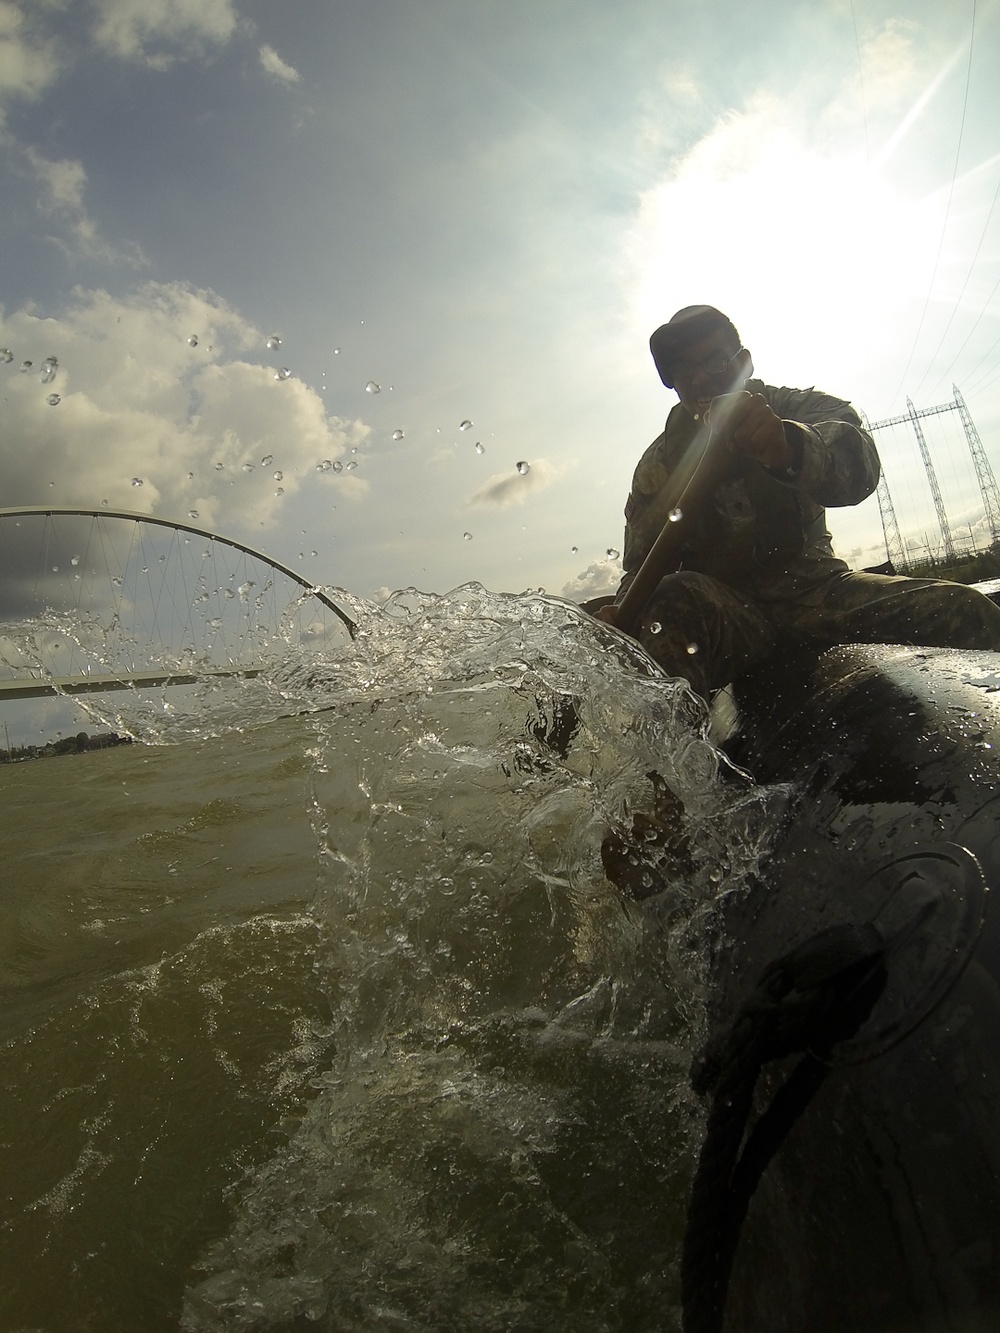 Paratroopers reenact Waal River crossing in Netherlands